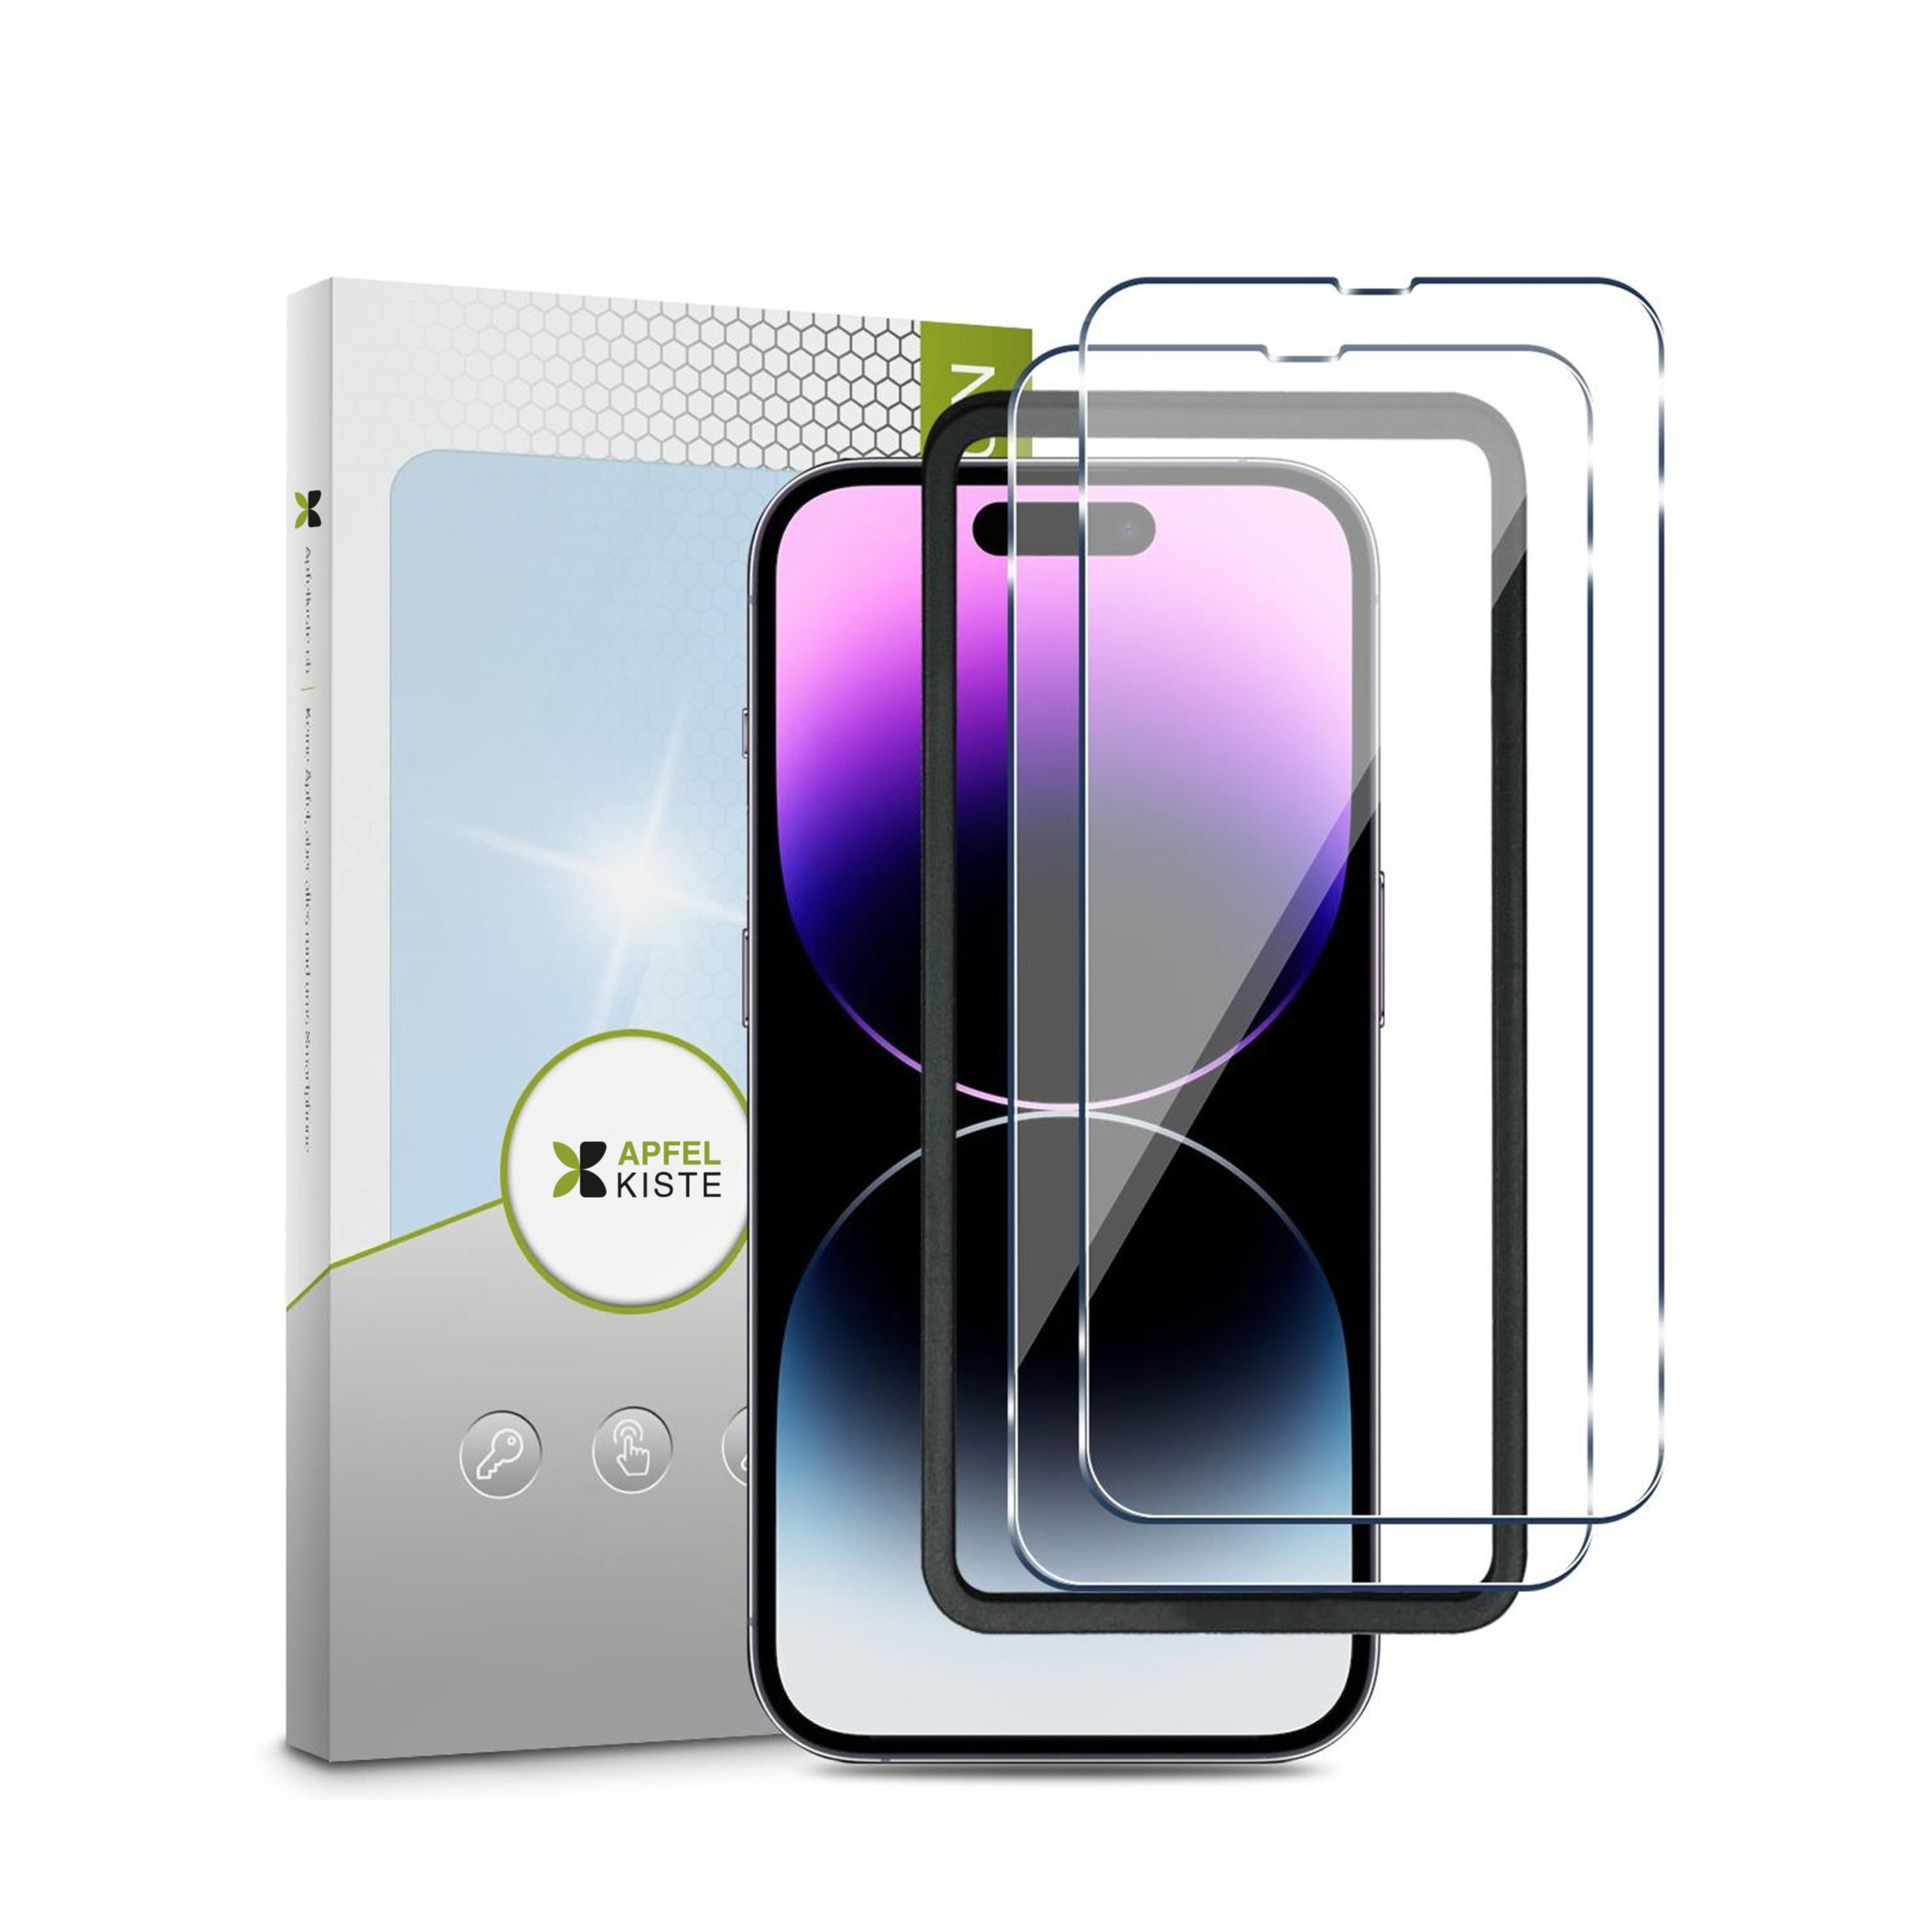 Bestes MagSafe-Zubehör: Geniale Gadgets für Euer iPhone!